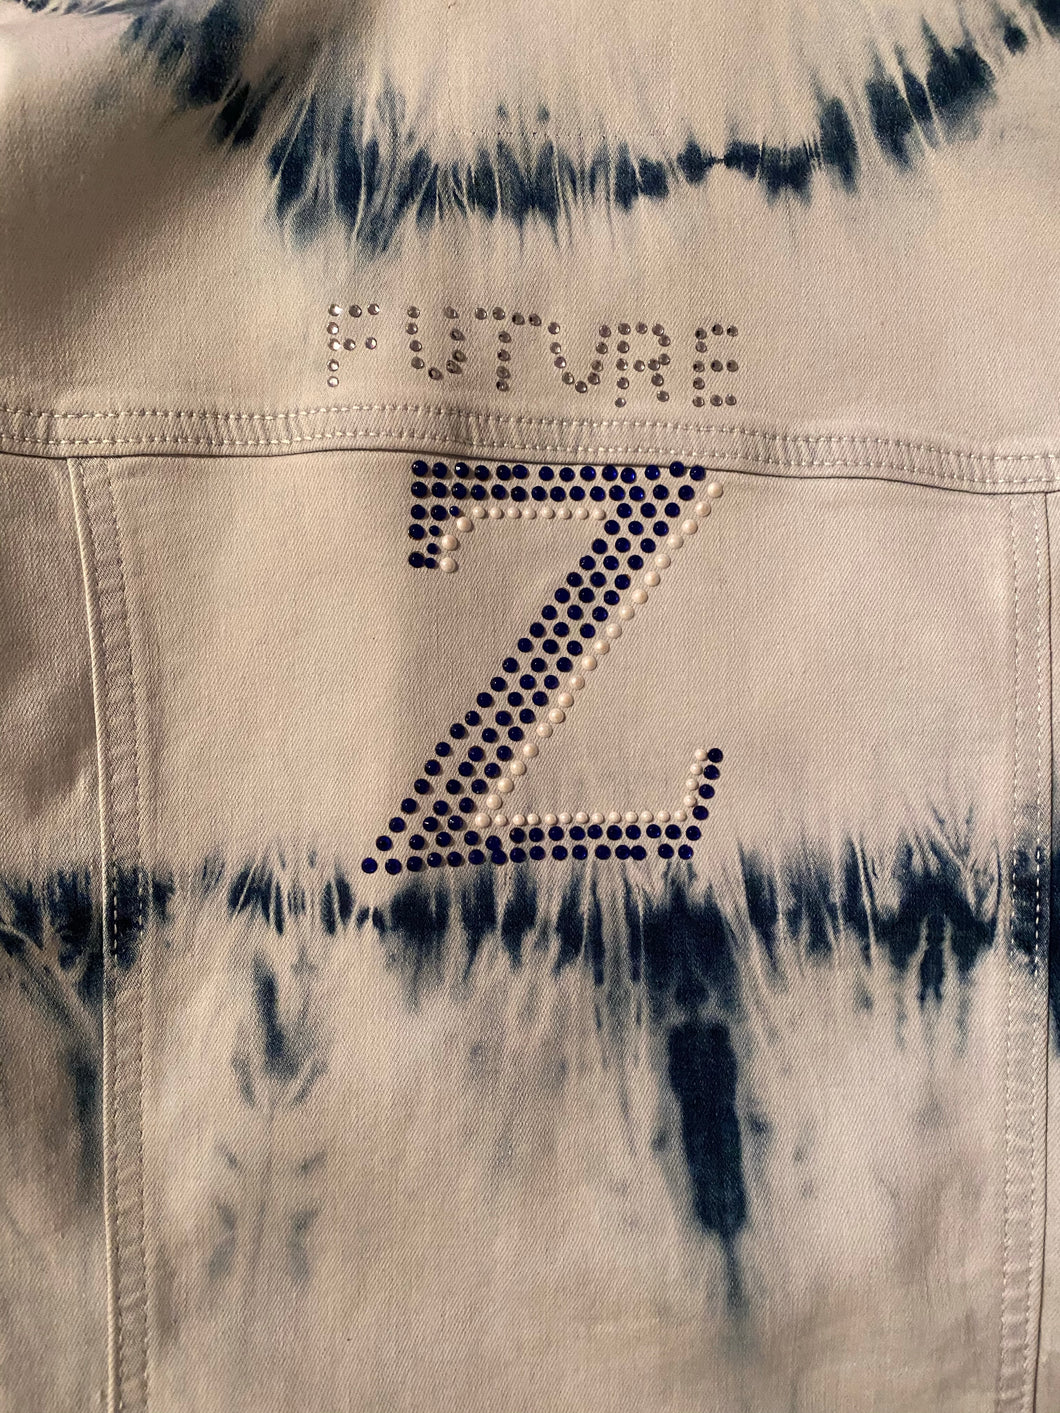 Future Zeta denim jackets